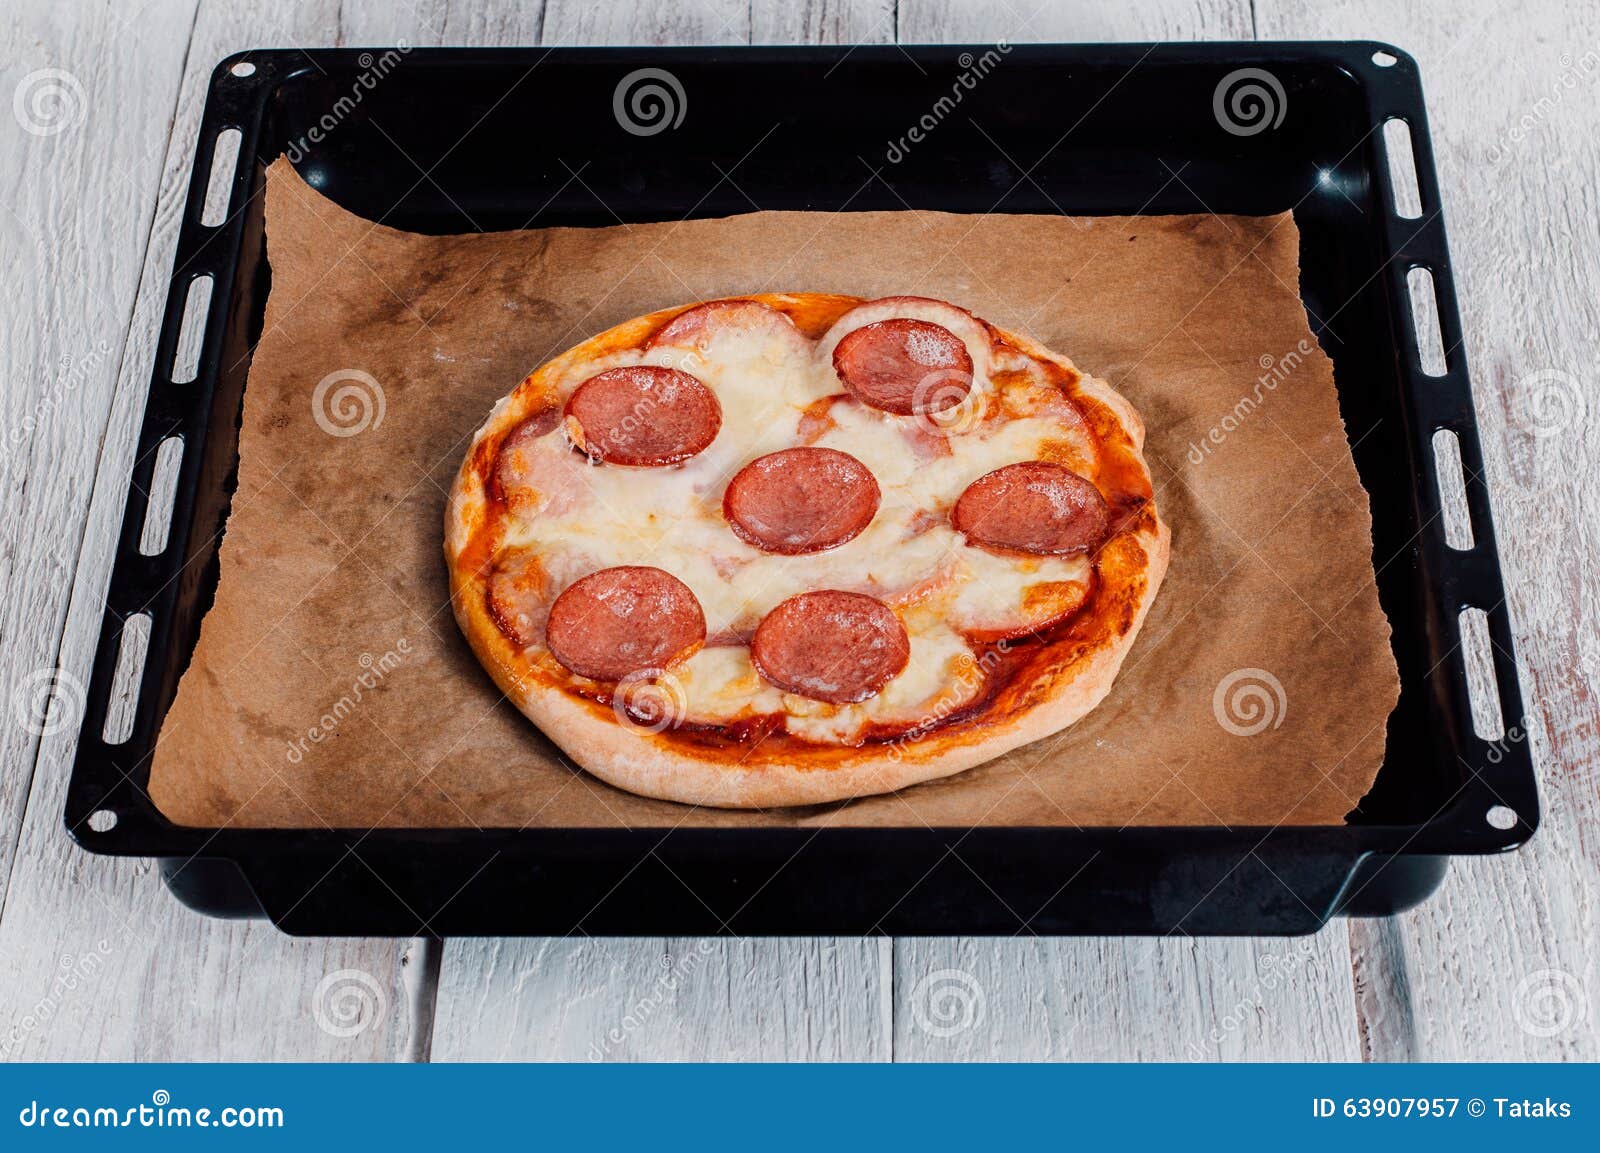 что можно использовать вместо пергаментной бумаги для выпечки в духовке пиццу фото 81